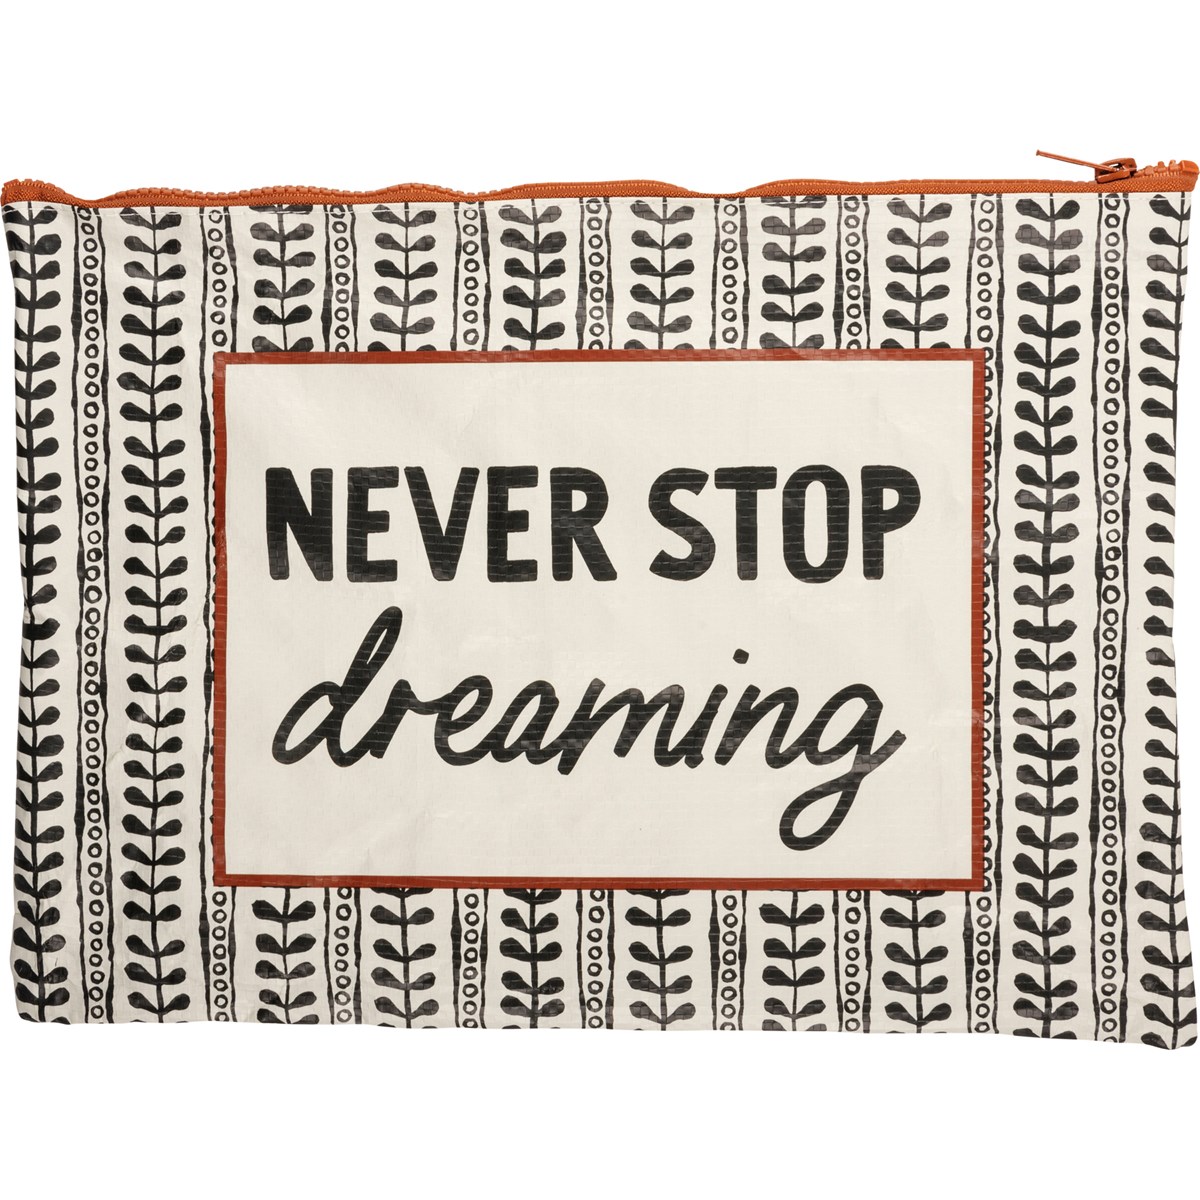 Never Stop Dreaming Zipper Folder - Post-Consumer Material, Plastic, Metal